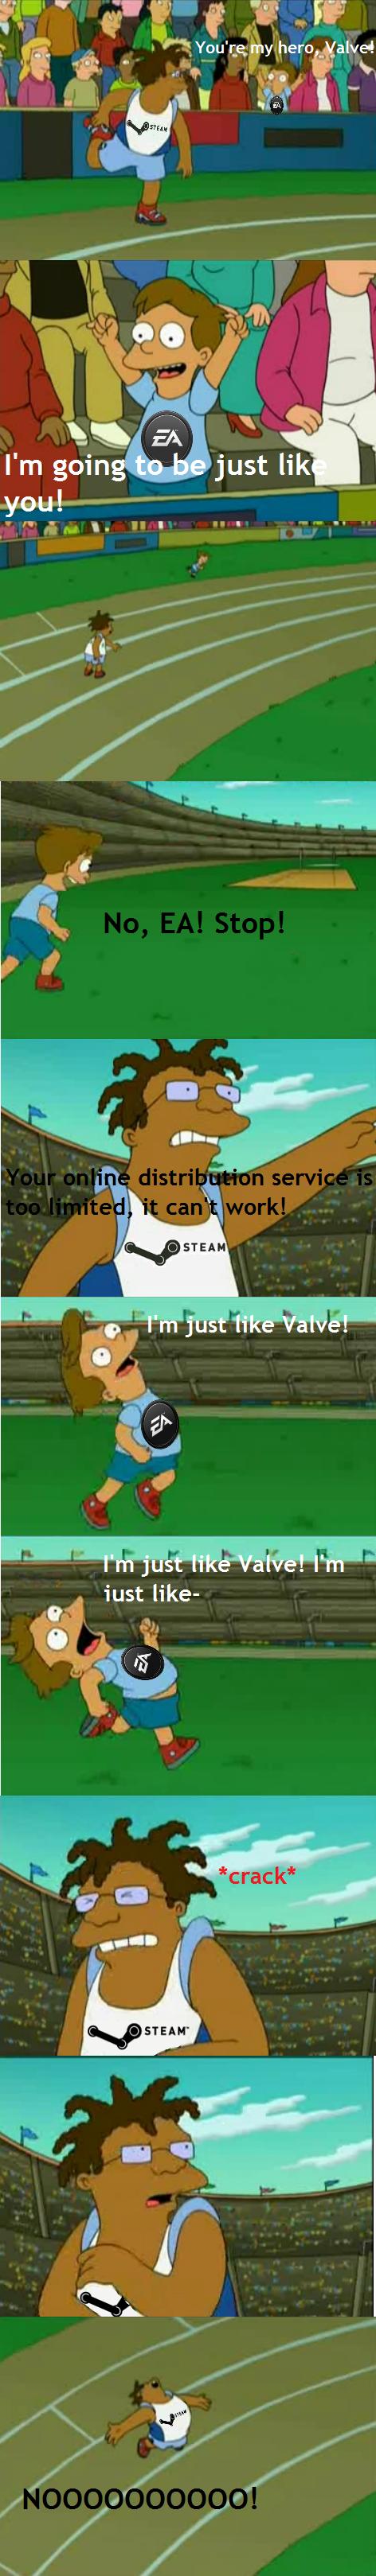 EA vs Valve